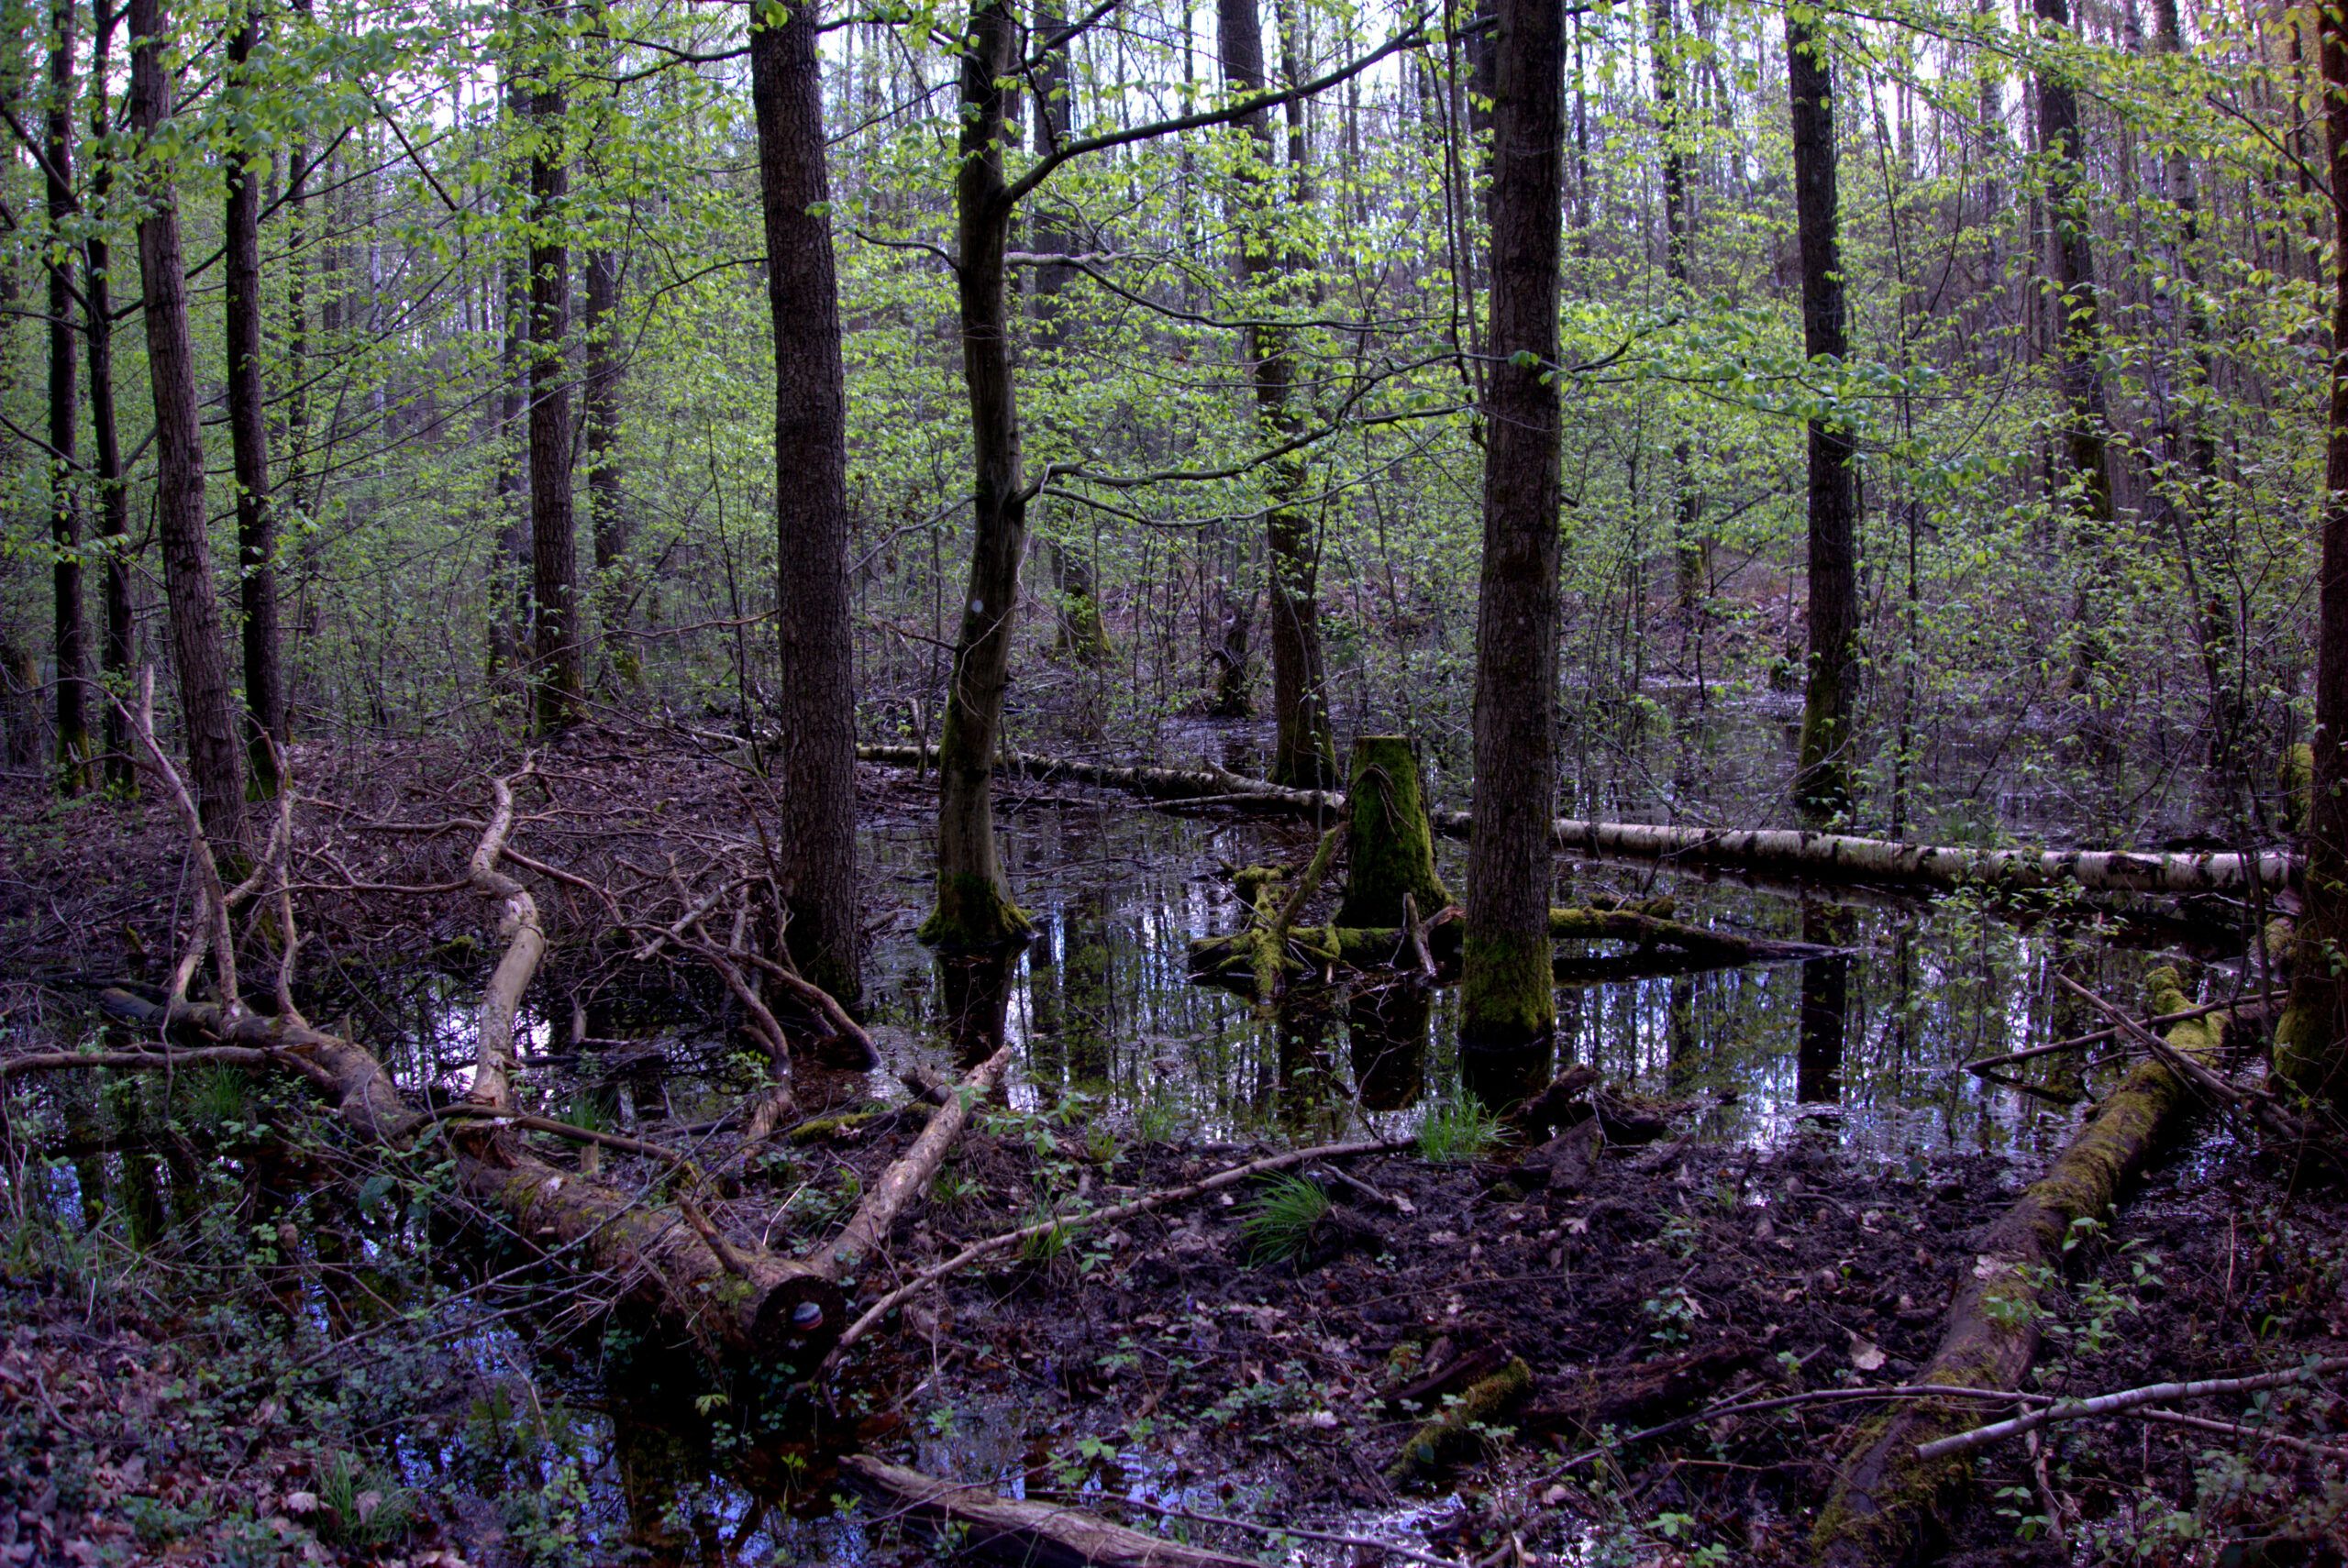 Abgebildet sind die unteren Bereiche von Bäumen und der Waldboden. Der Boden ist nass, es haben sich Wasserflächen gebildet.